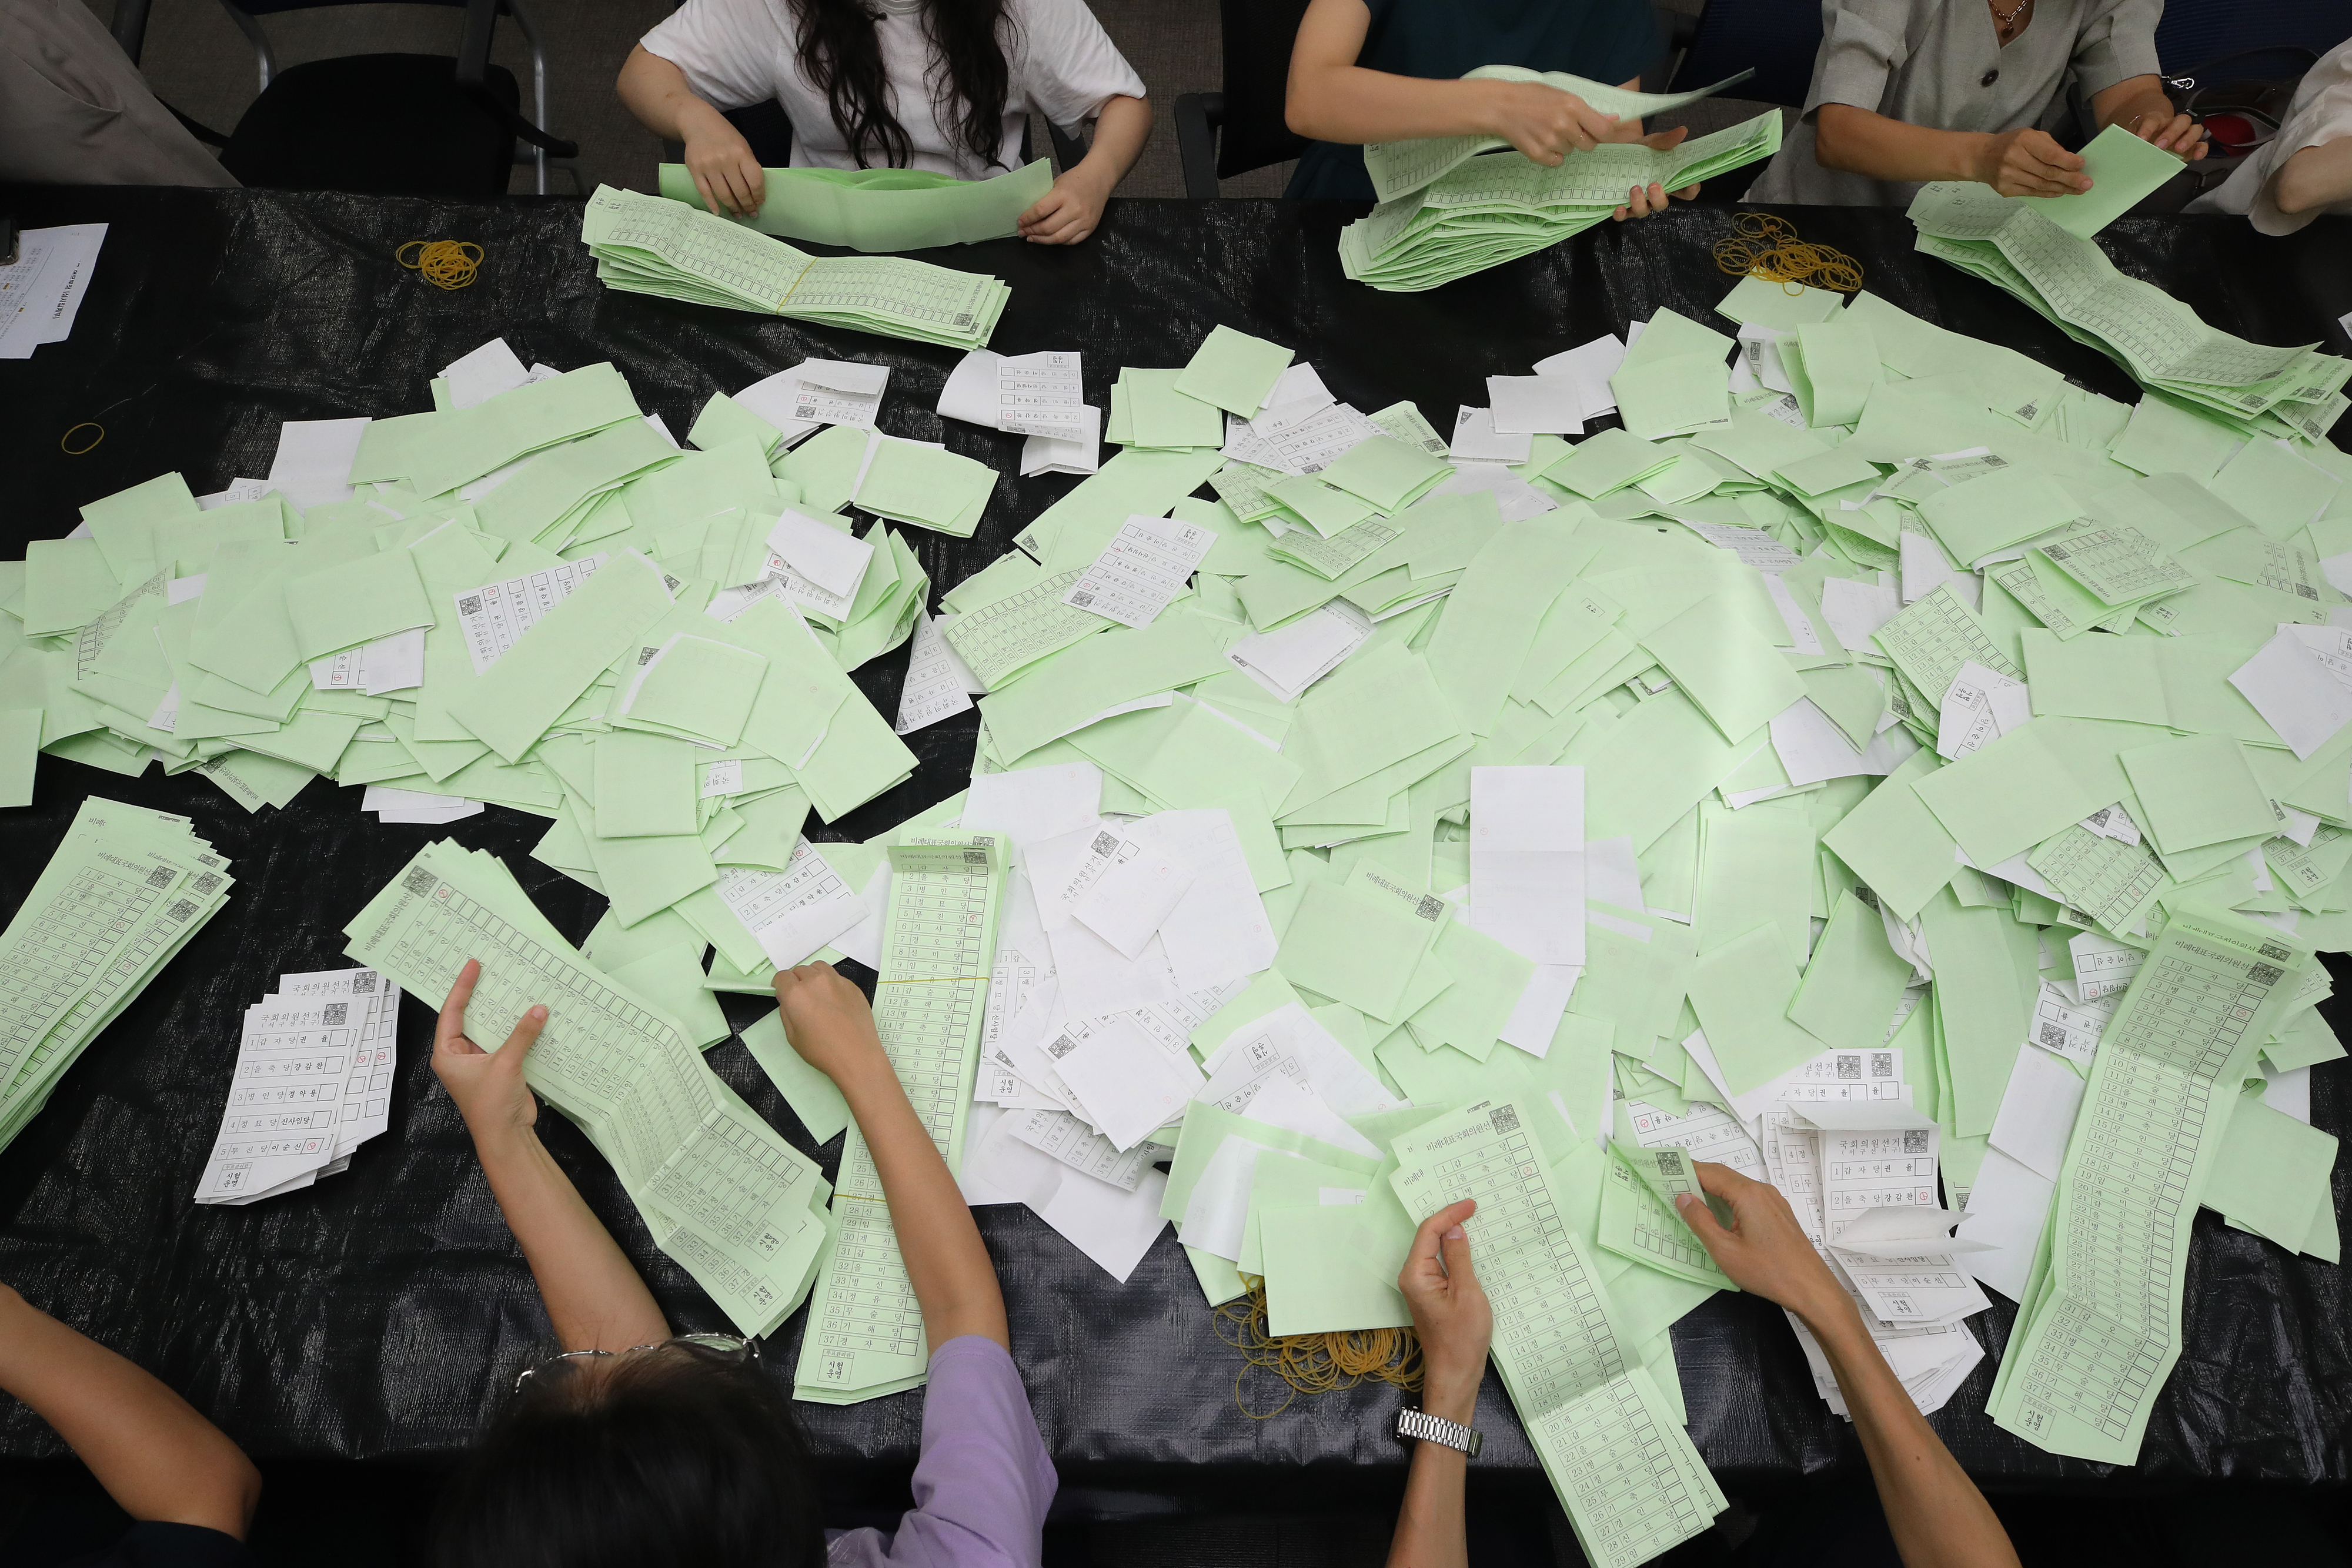 내년 4월 10일 실시되는 제22대 국회의원선거를 앞두고 20일 오후 대구시선거관리위원회에서 열린 개표실습에 참가한 구·군 선관위 직원 등 선거 관계자들이 모의 투표용지를 분류하고 있다. 뉴스1